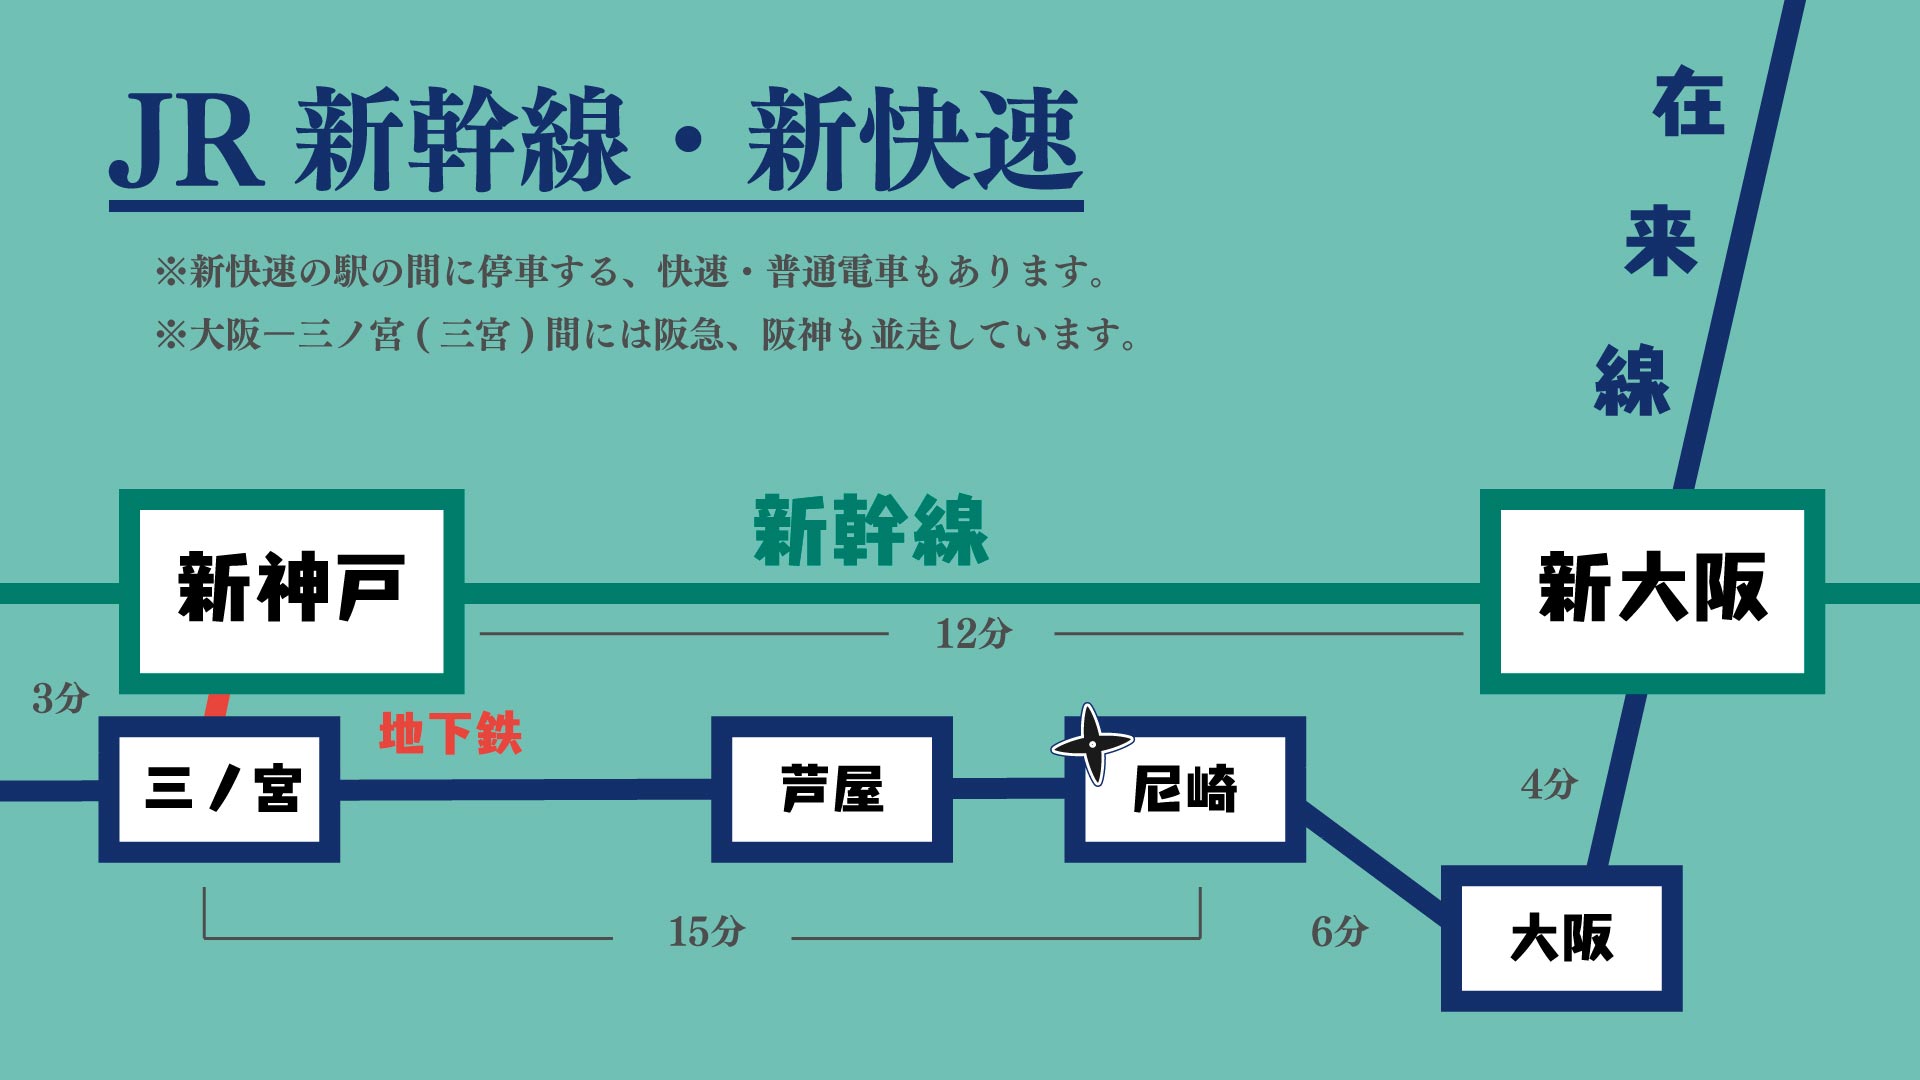 尼崎と神戸の間の新快速停車駅の図